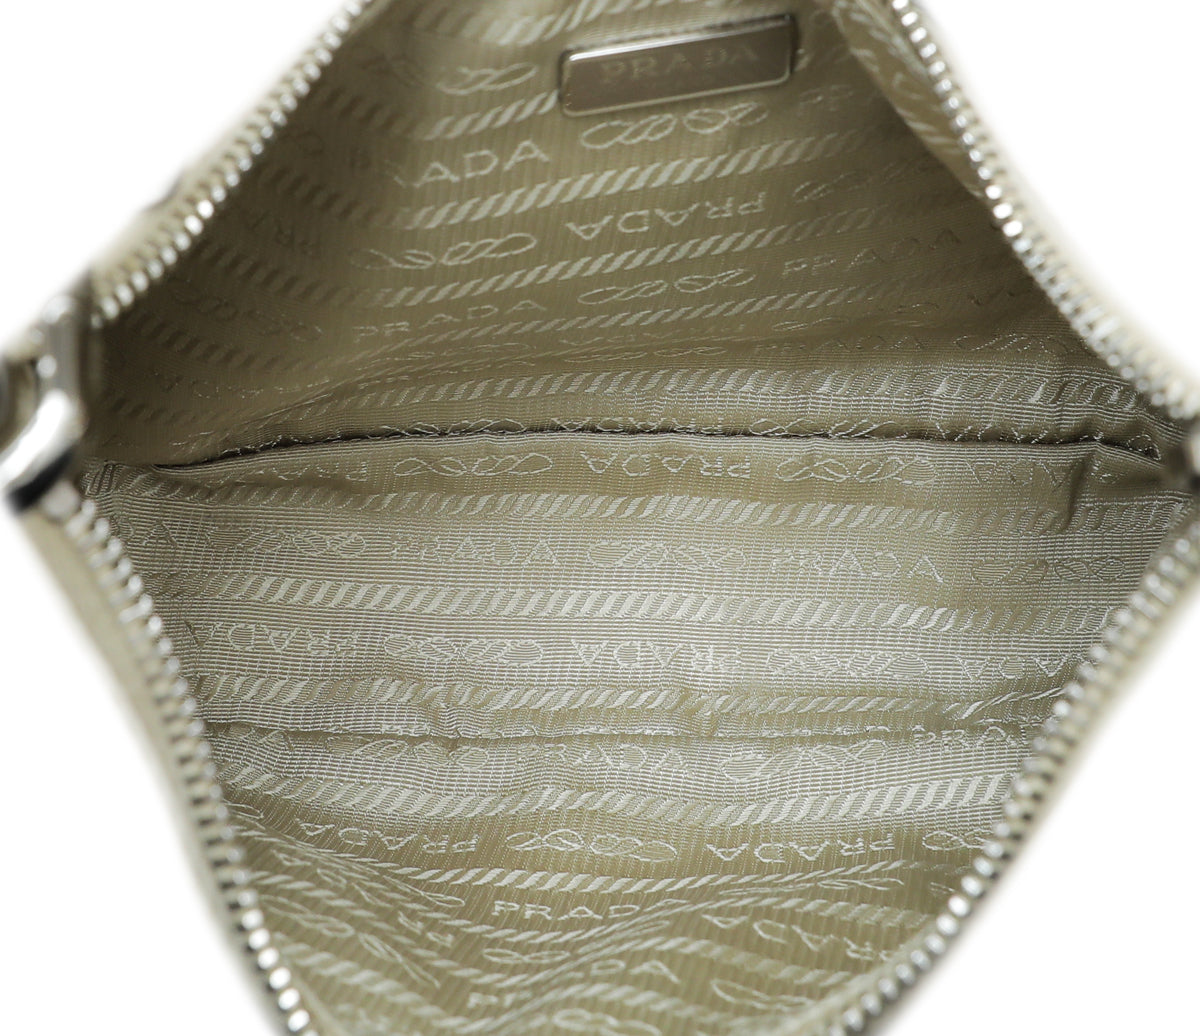 Prada Desert Beige Re-Nylon 2005 Re-Edition Bag